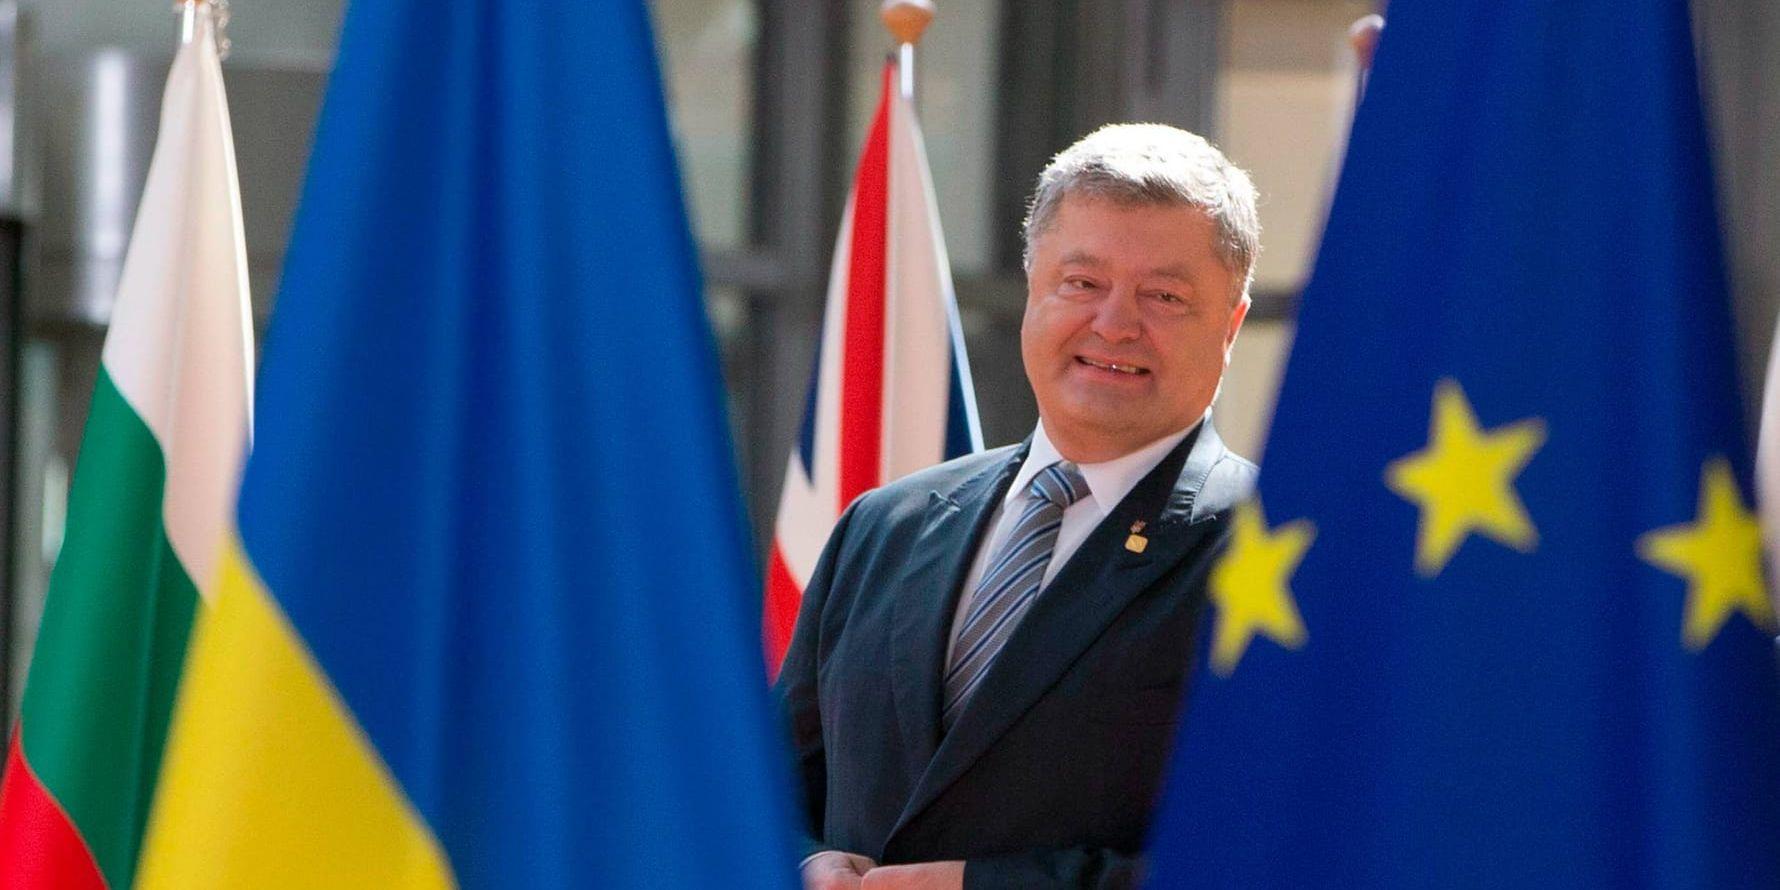 Ukrainas president Petro Porosjenko vill se ett tätare samarbete med EU. Här vid ett möte med Europeiska rådets ordförande Donald Tusk i juni i år. Arkivbild.